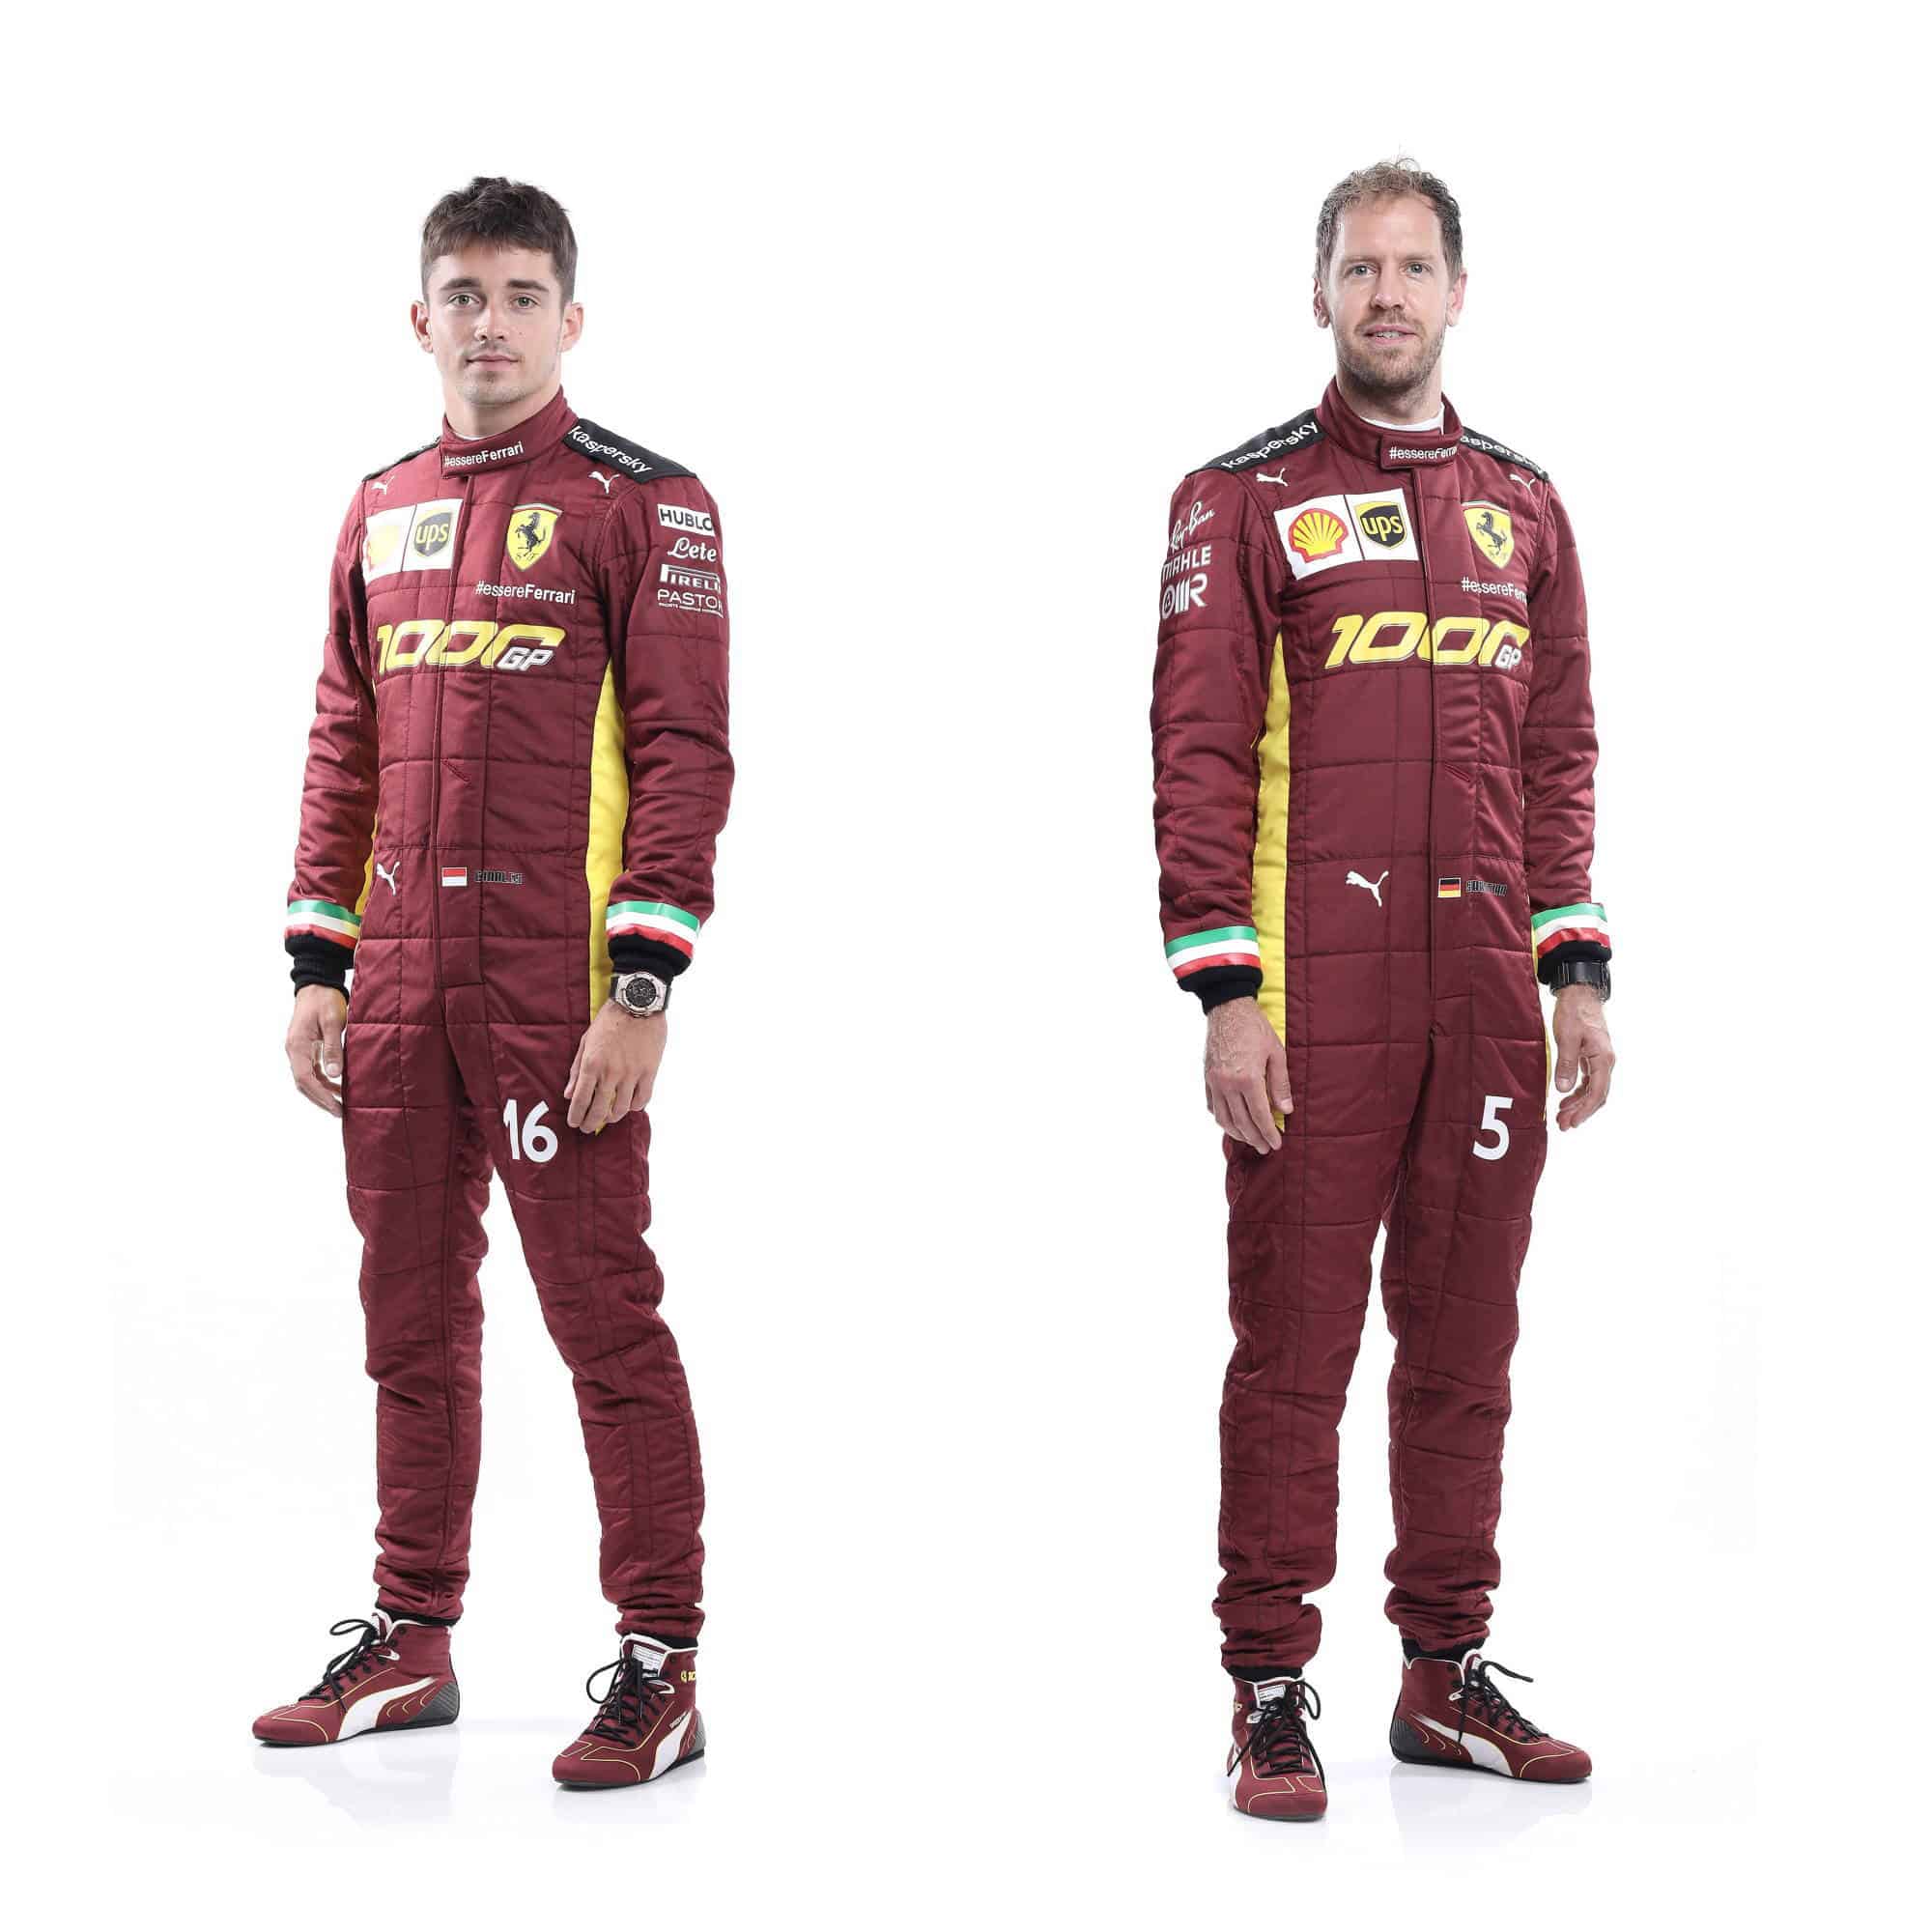 Scuderia Ferrari Race Suit special for 1000th race